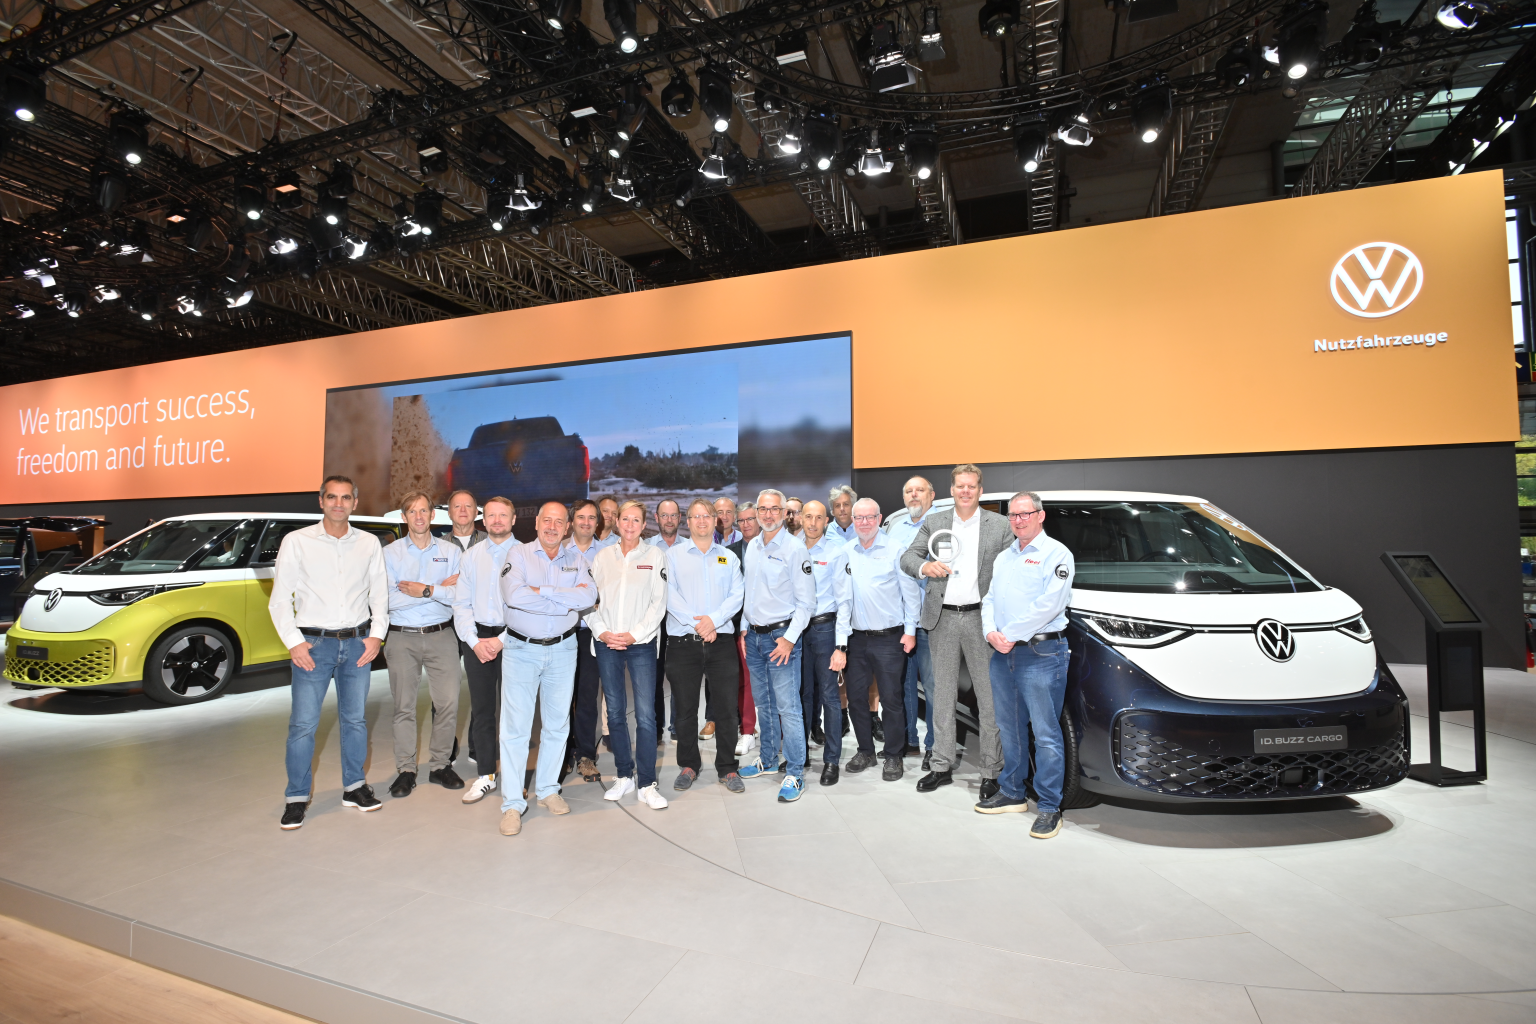 Slideshow Bild - Die Jury "International Van Of The Year" beim Besuch auf dem Stand von Volkswagen Nutzfahrzeuge in Halle 12 auf der IAA Transportation.